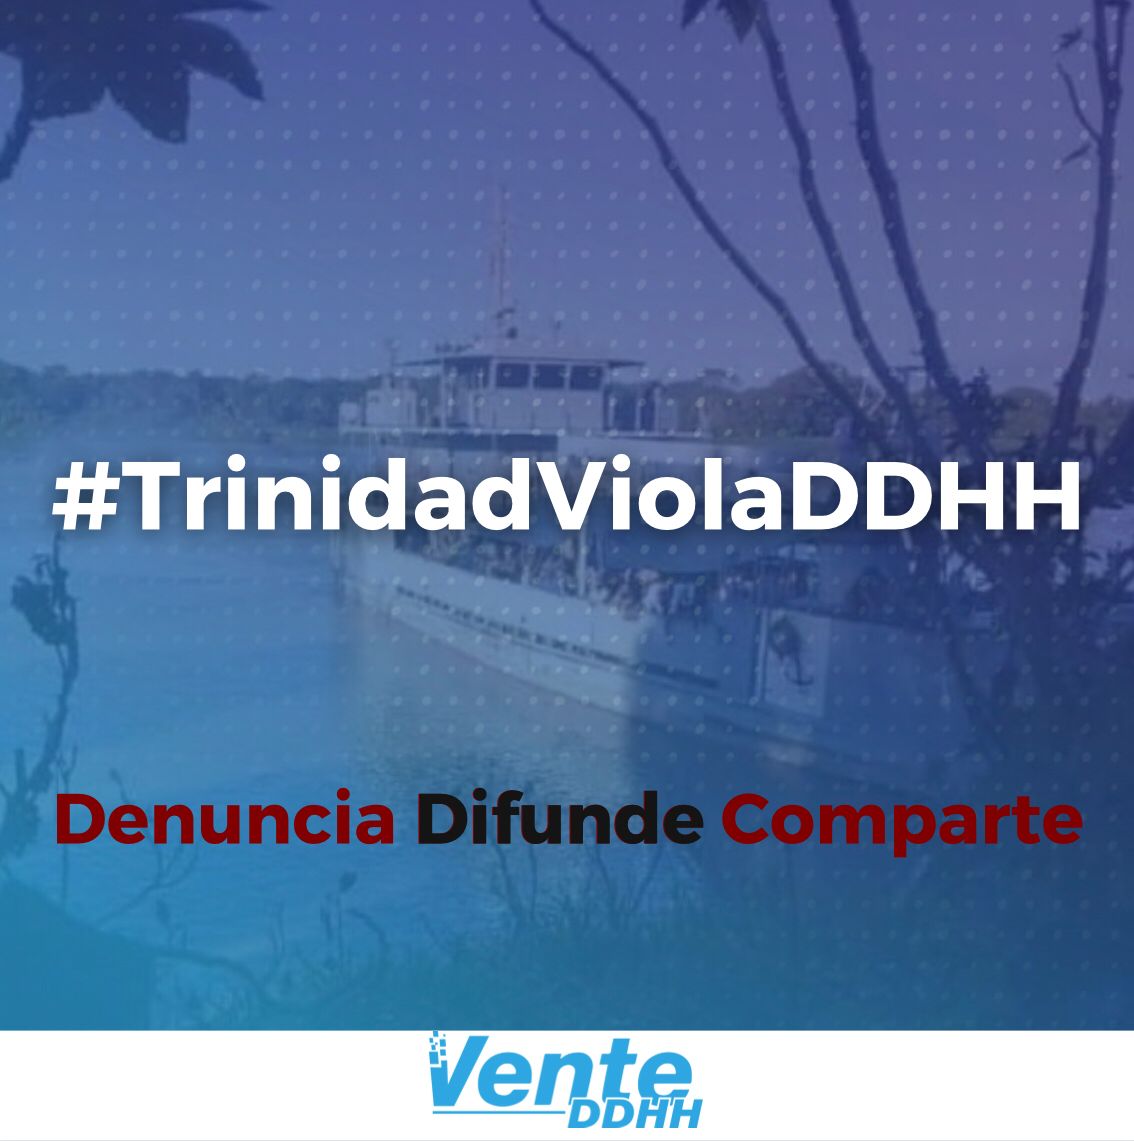 #TrinidadViolaDDHH: Vente Venezuela visibiliza patrón de agresiones de Trinidad y Tobago a venezolanos (+tweets)